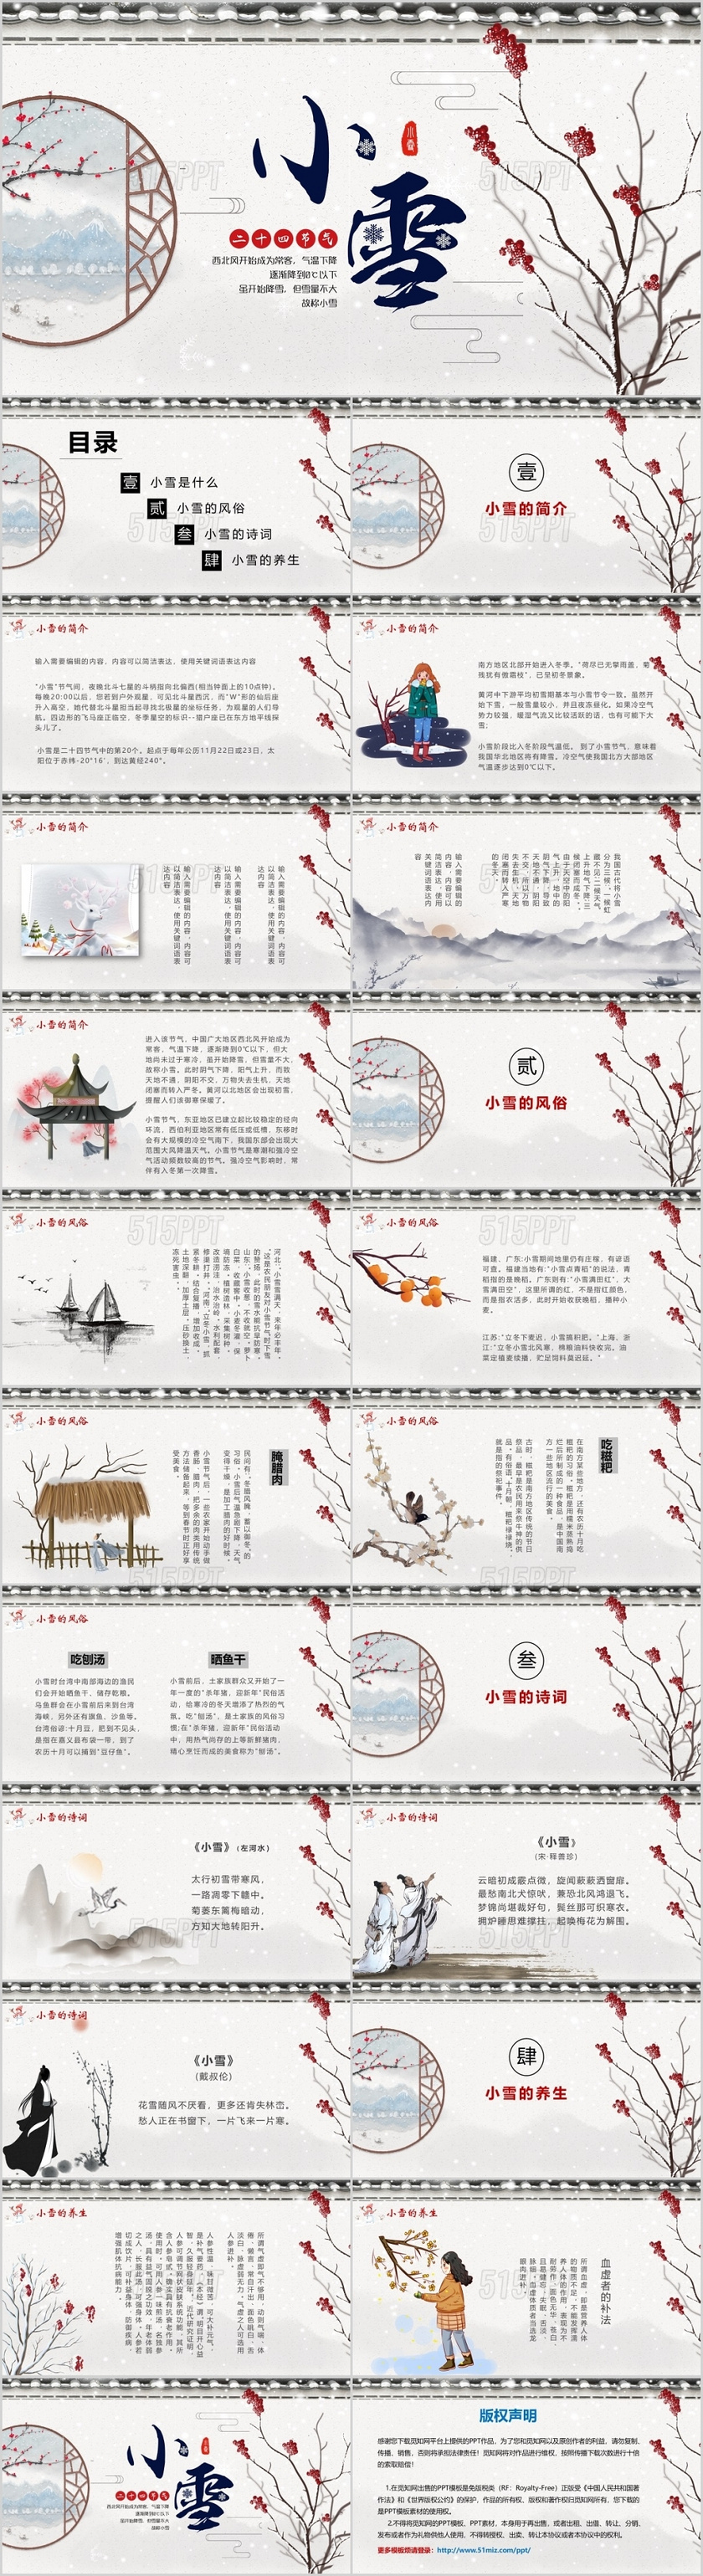 中国风中国传统二十四节气之小雪介绍ppt模板